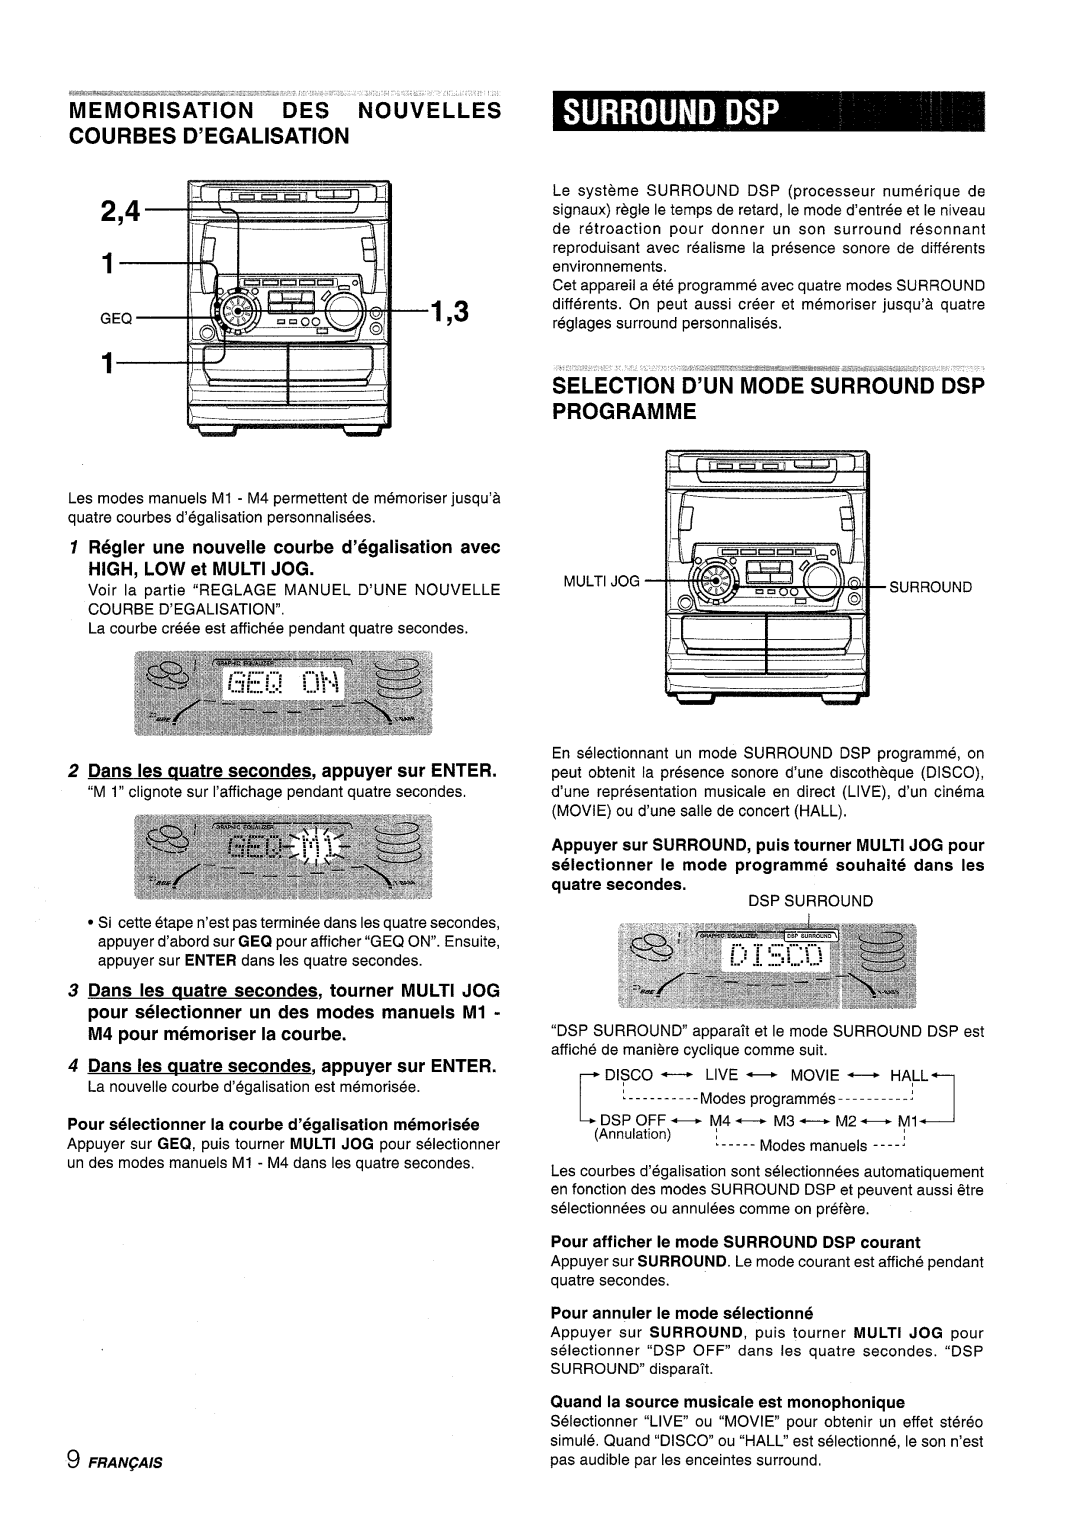 Sony NSX-A707 manual Memorisation Des Nouvelles Courbes D’Egalisation, Selection D’Un Mode Surround Dsp Programme 